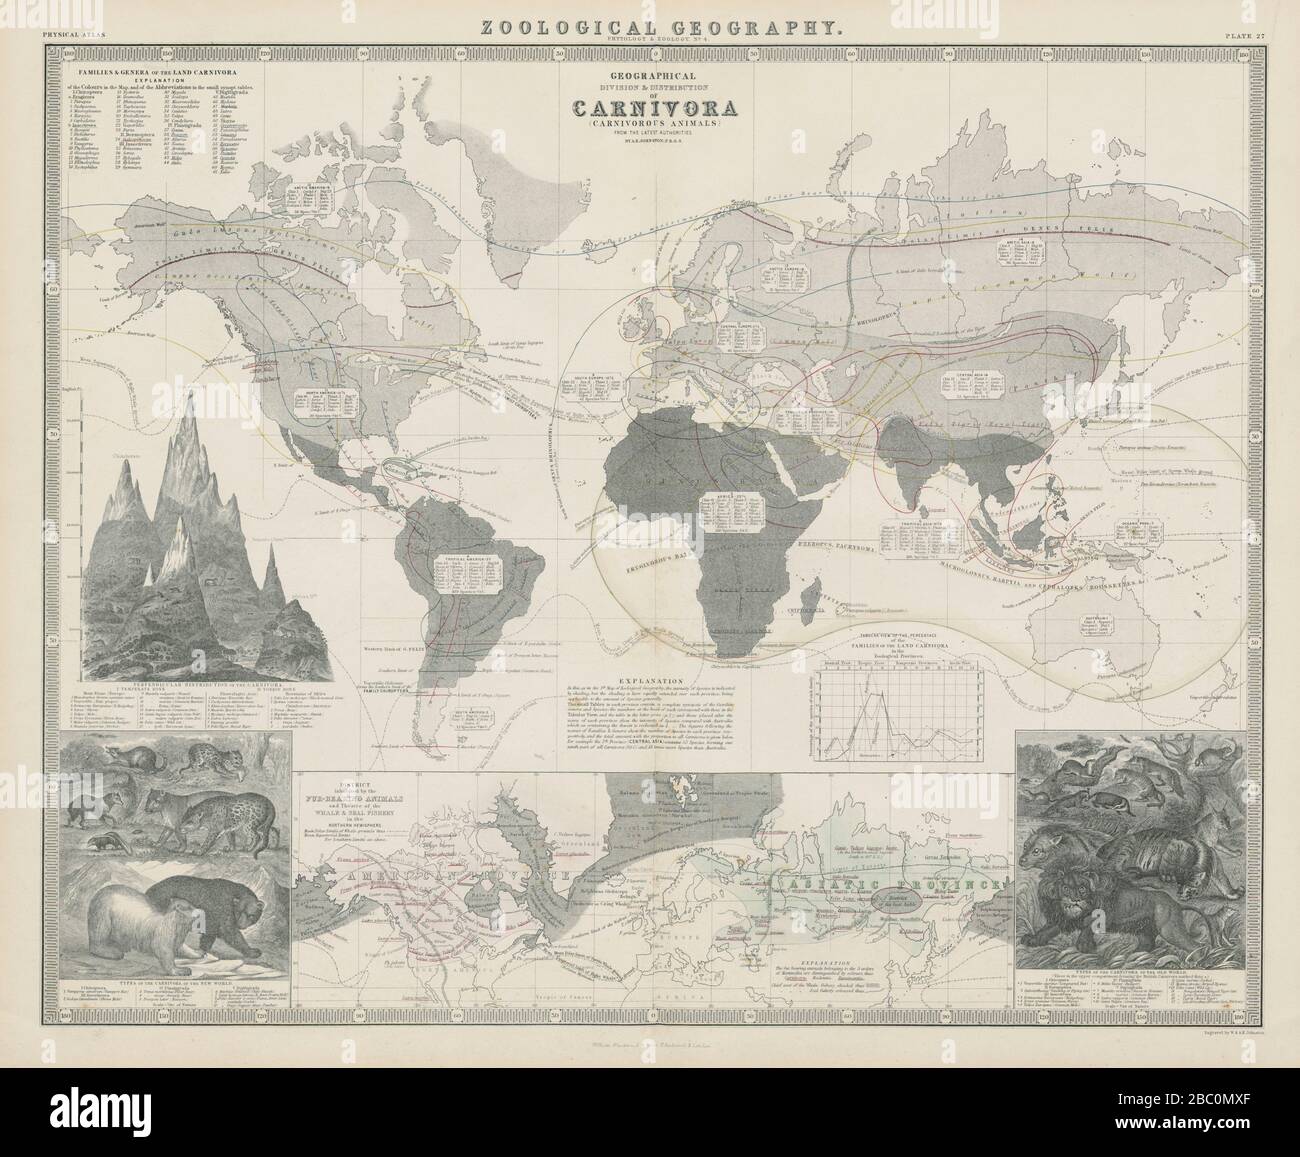 Géographie zoologique. Carnivora (animaux carnivores) distribution 1856 carte Banque D'Images